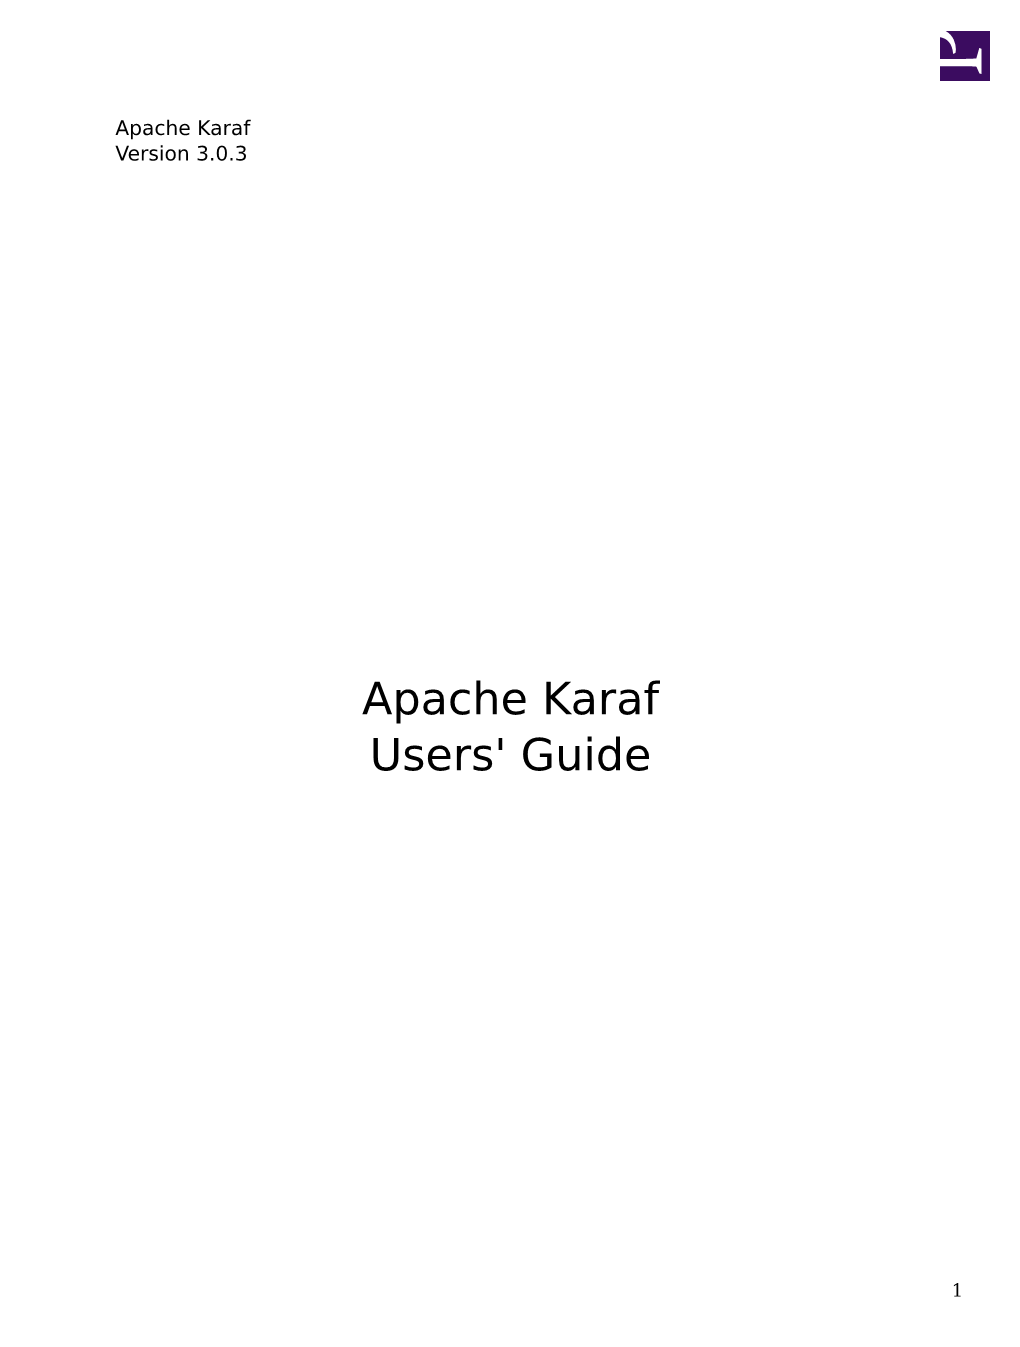 Apache Karaf 3.0.3 Guides